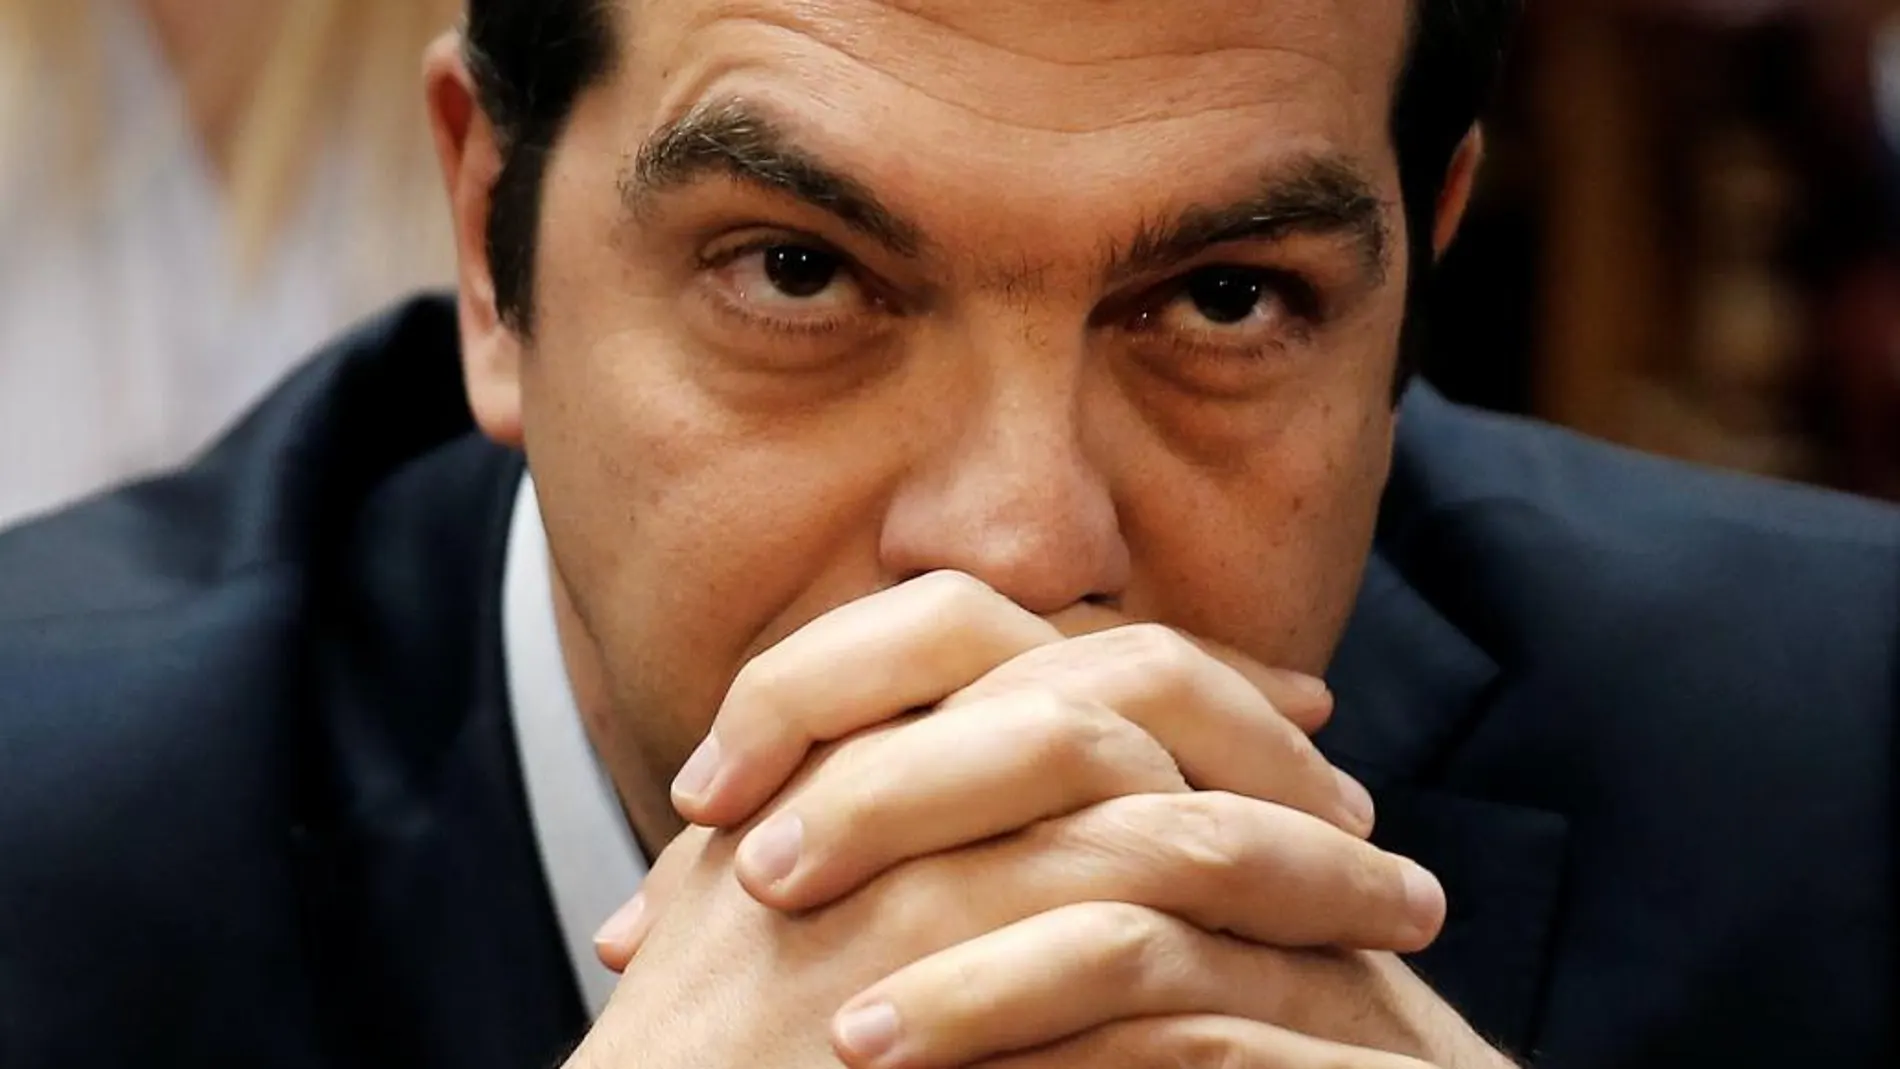 El primer ministro griego Alexis Tsipras.